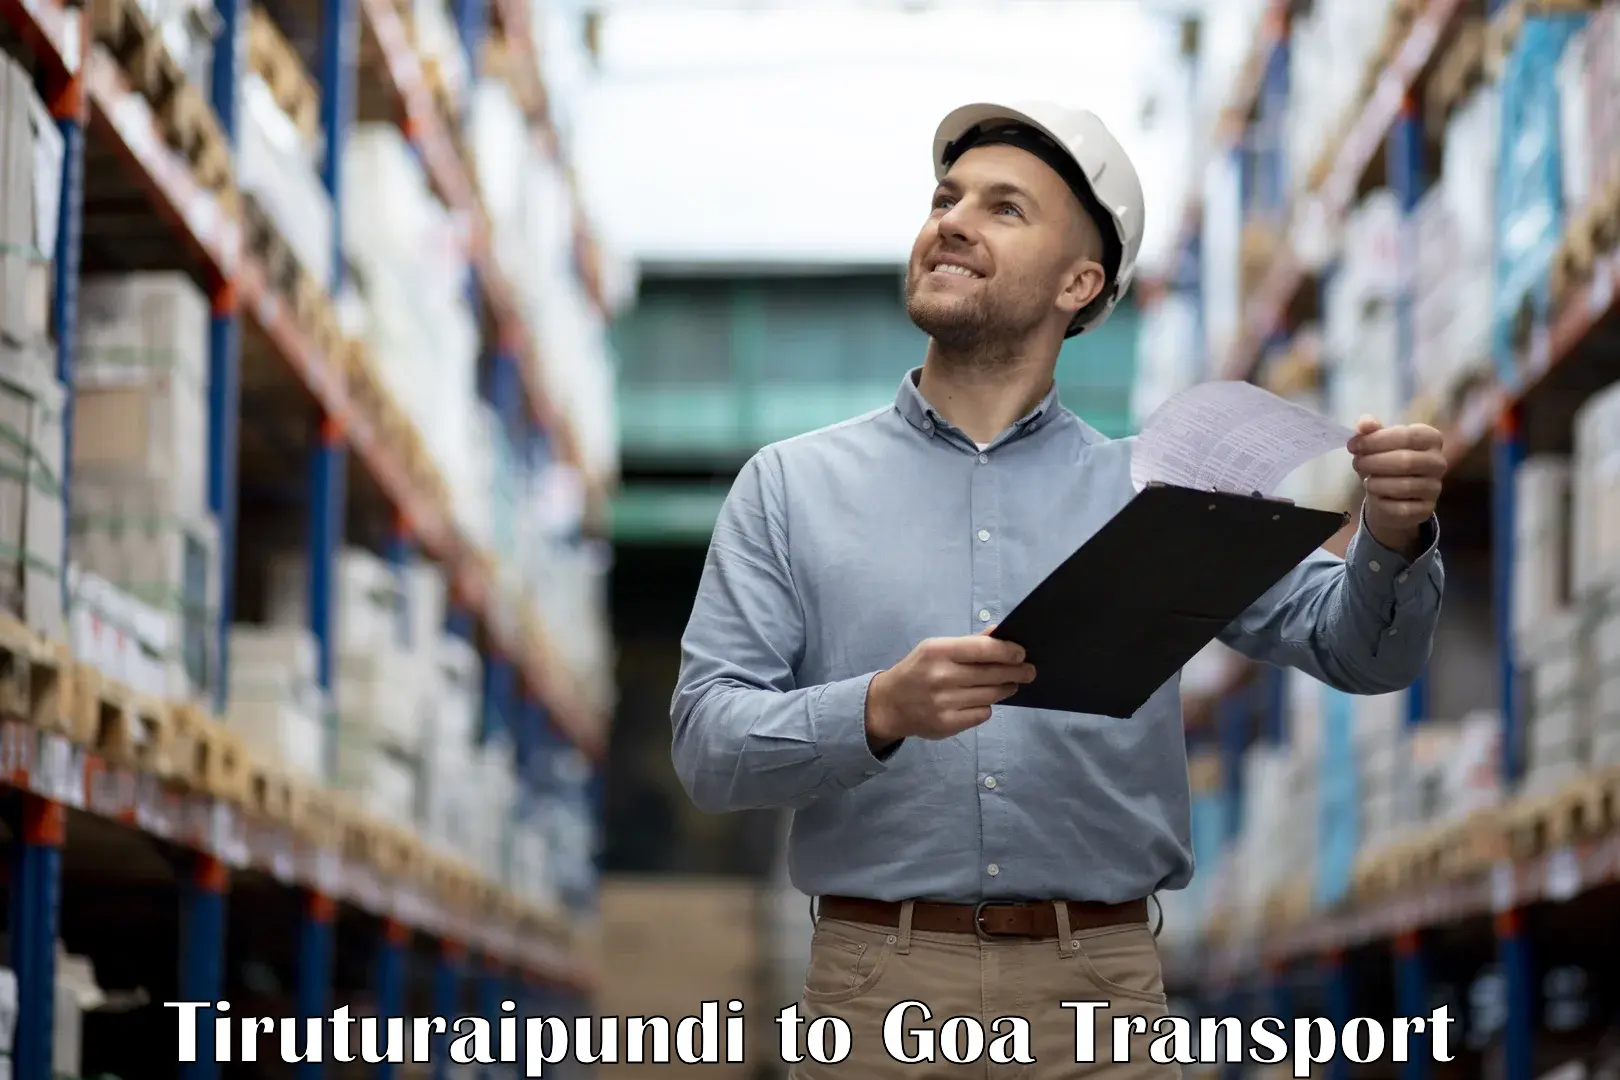 Daily transport service in Tiruturaipundi to Goa University